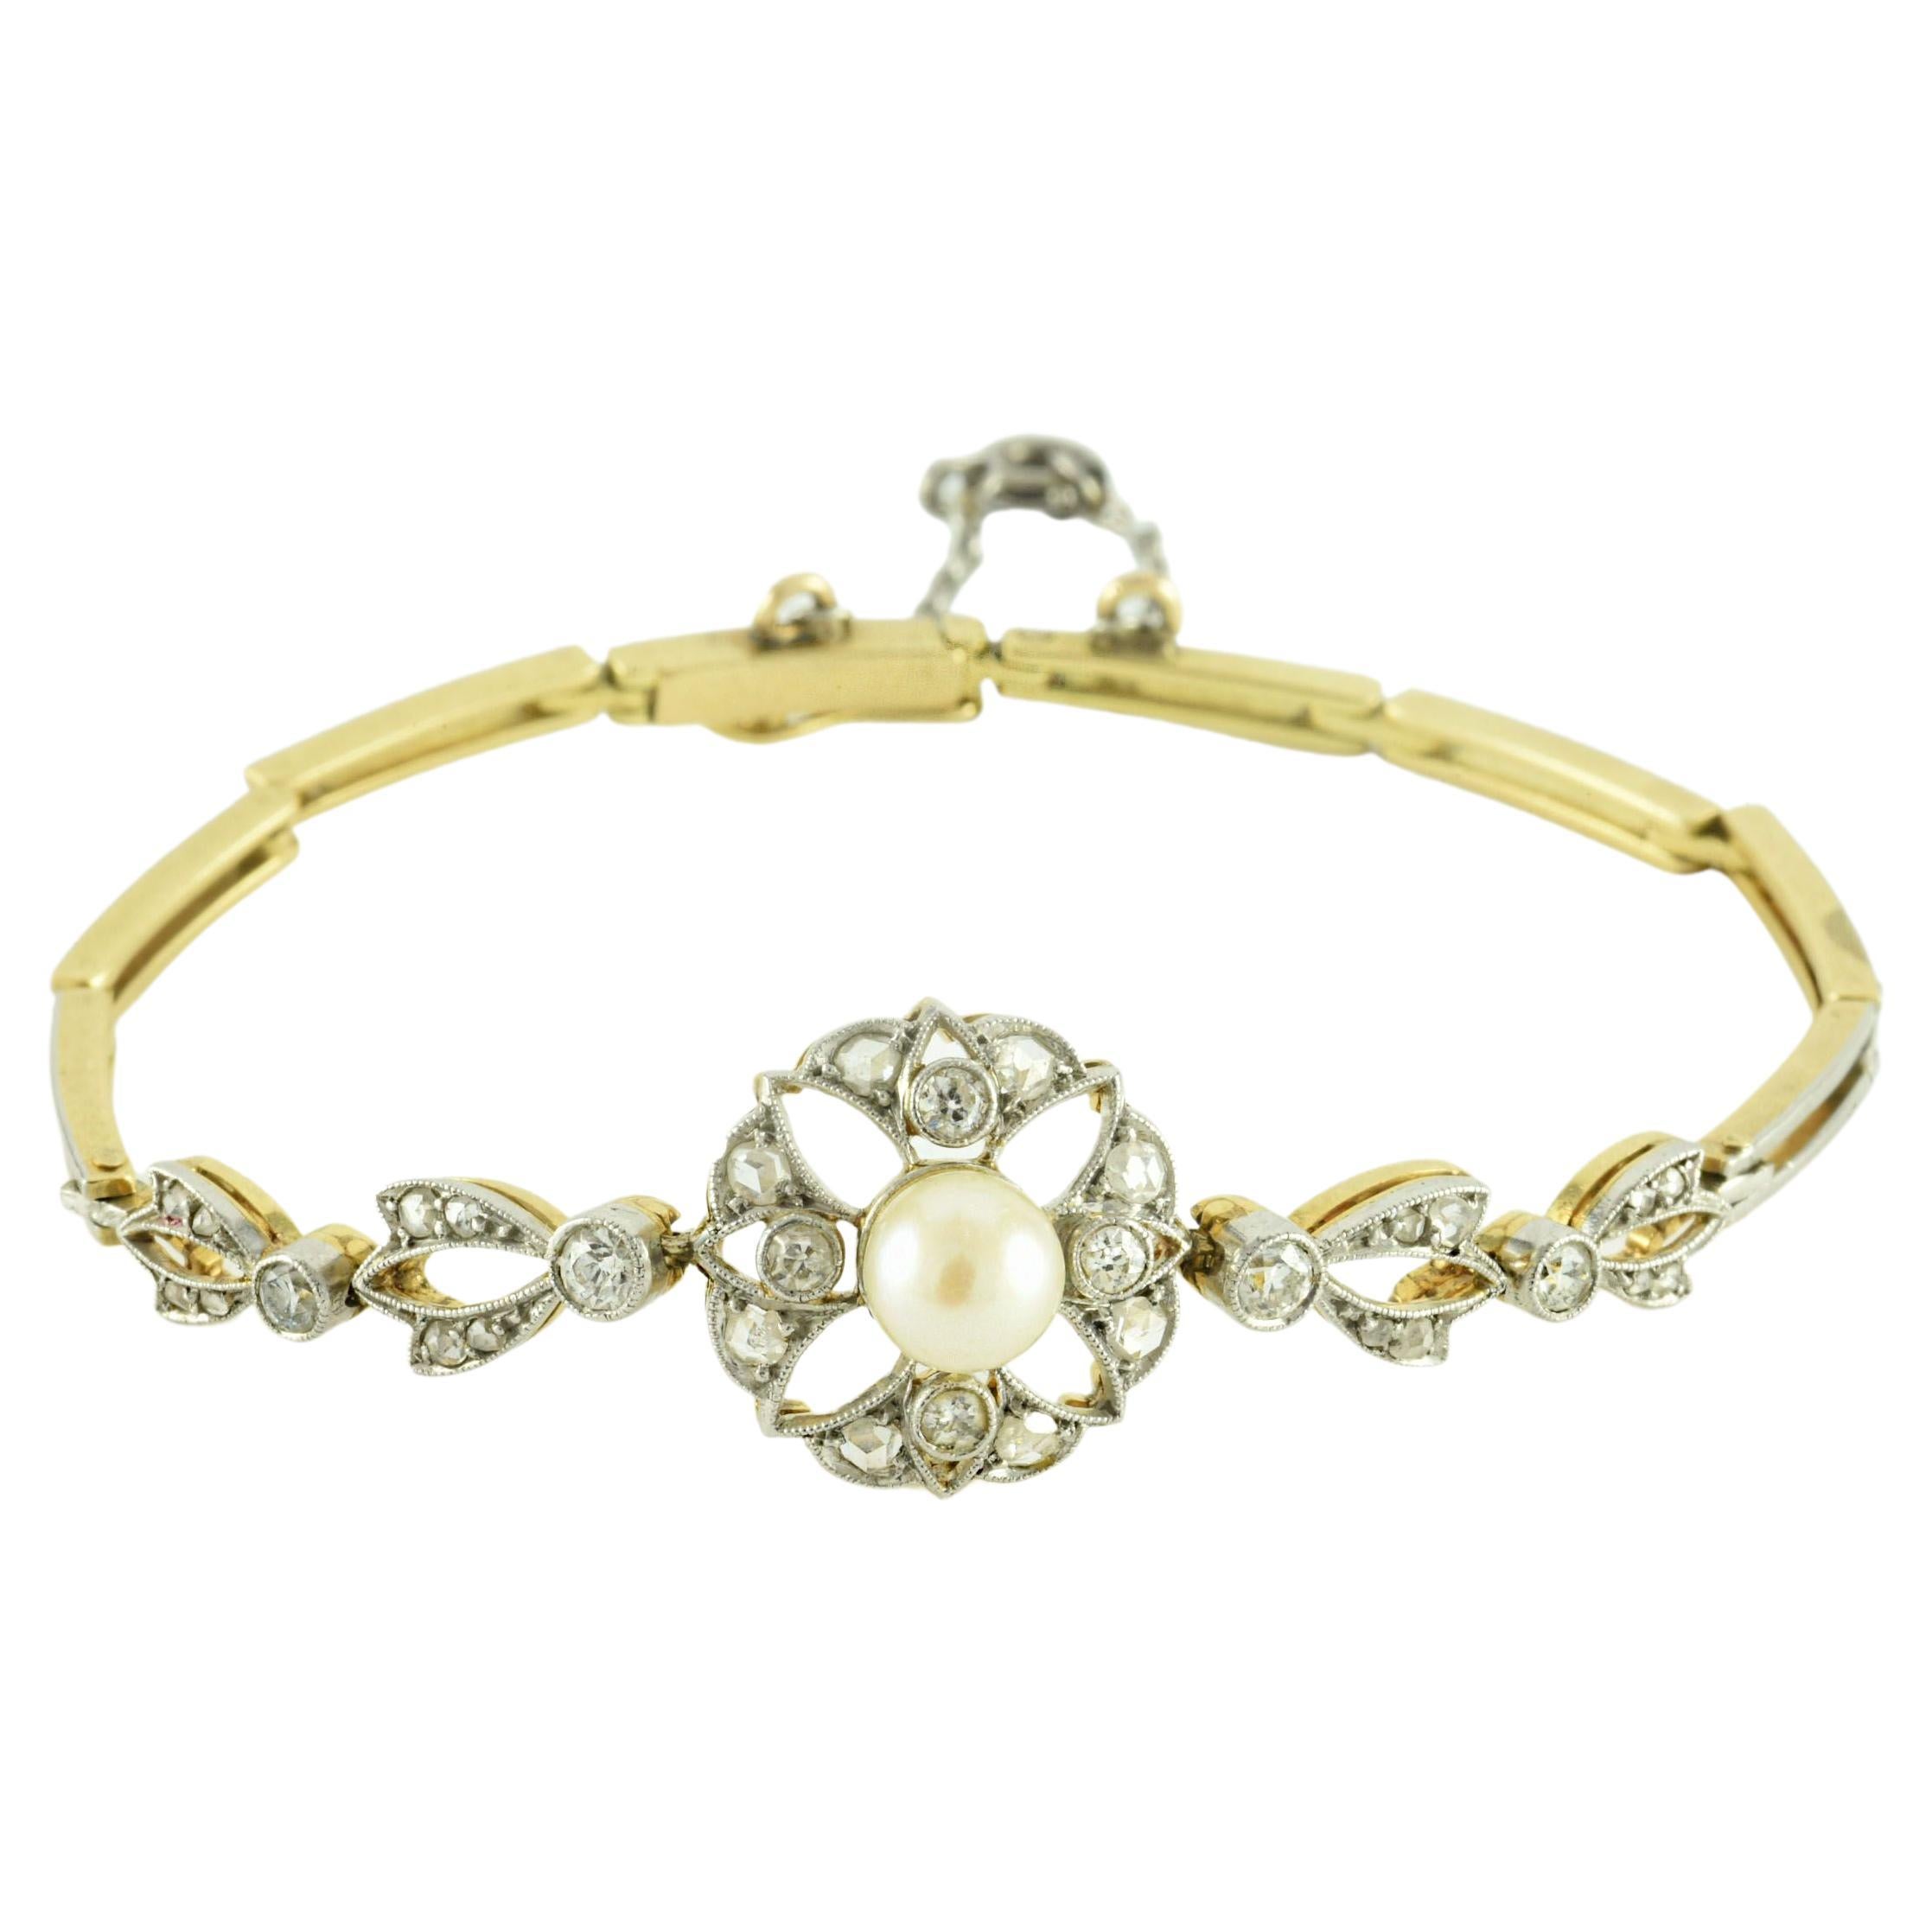 Weißes Perlen- und Diamantarmband aus der Edwardianischen Ära